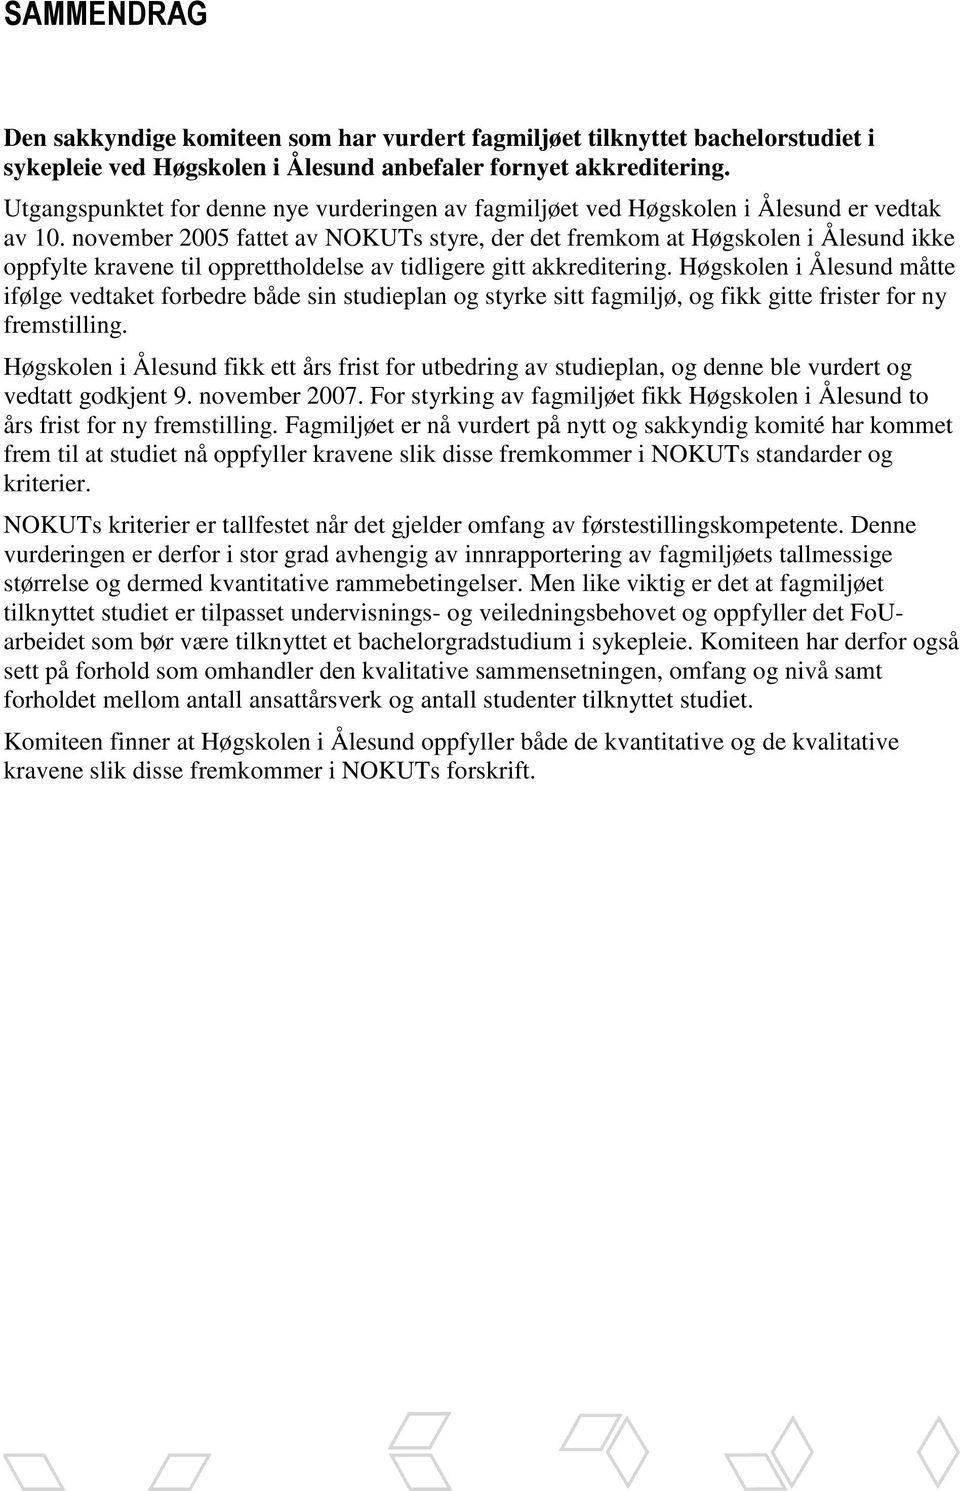 november 2005 fattet av NOKUTs styre, der det fremkom at Høgskolen i Ålesund ikke oppfylte kravene til opprettholdelse av tidligere gitt akkreditering.